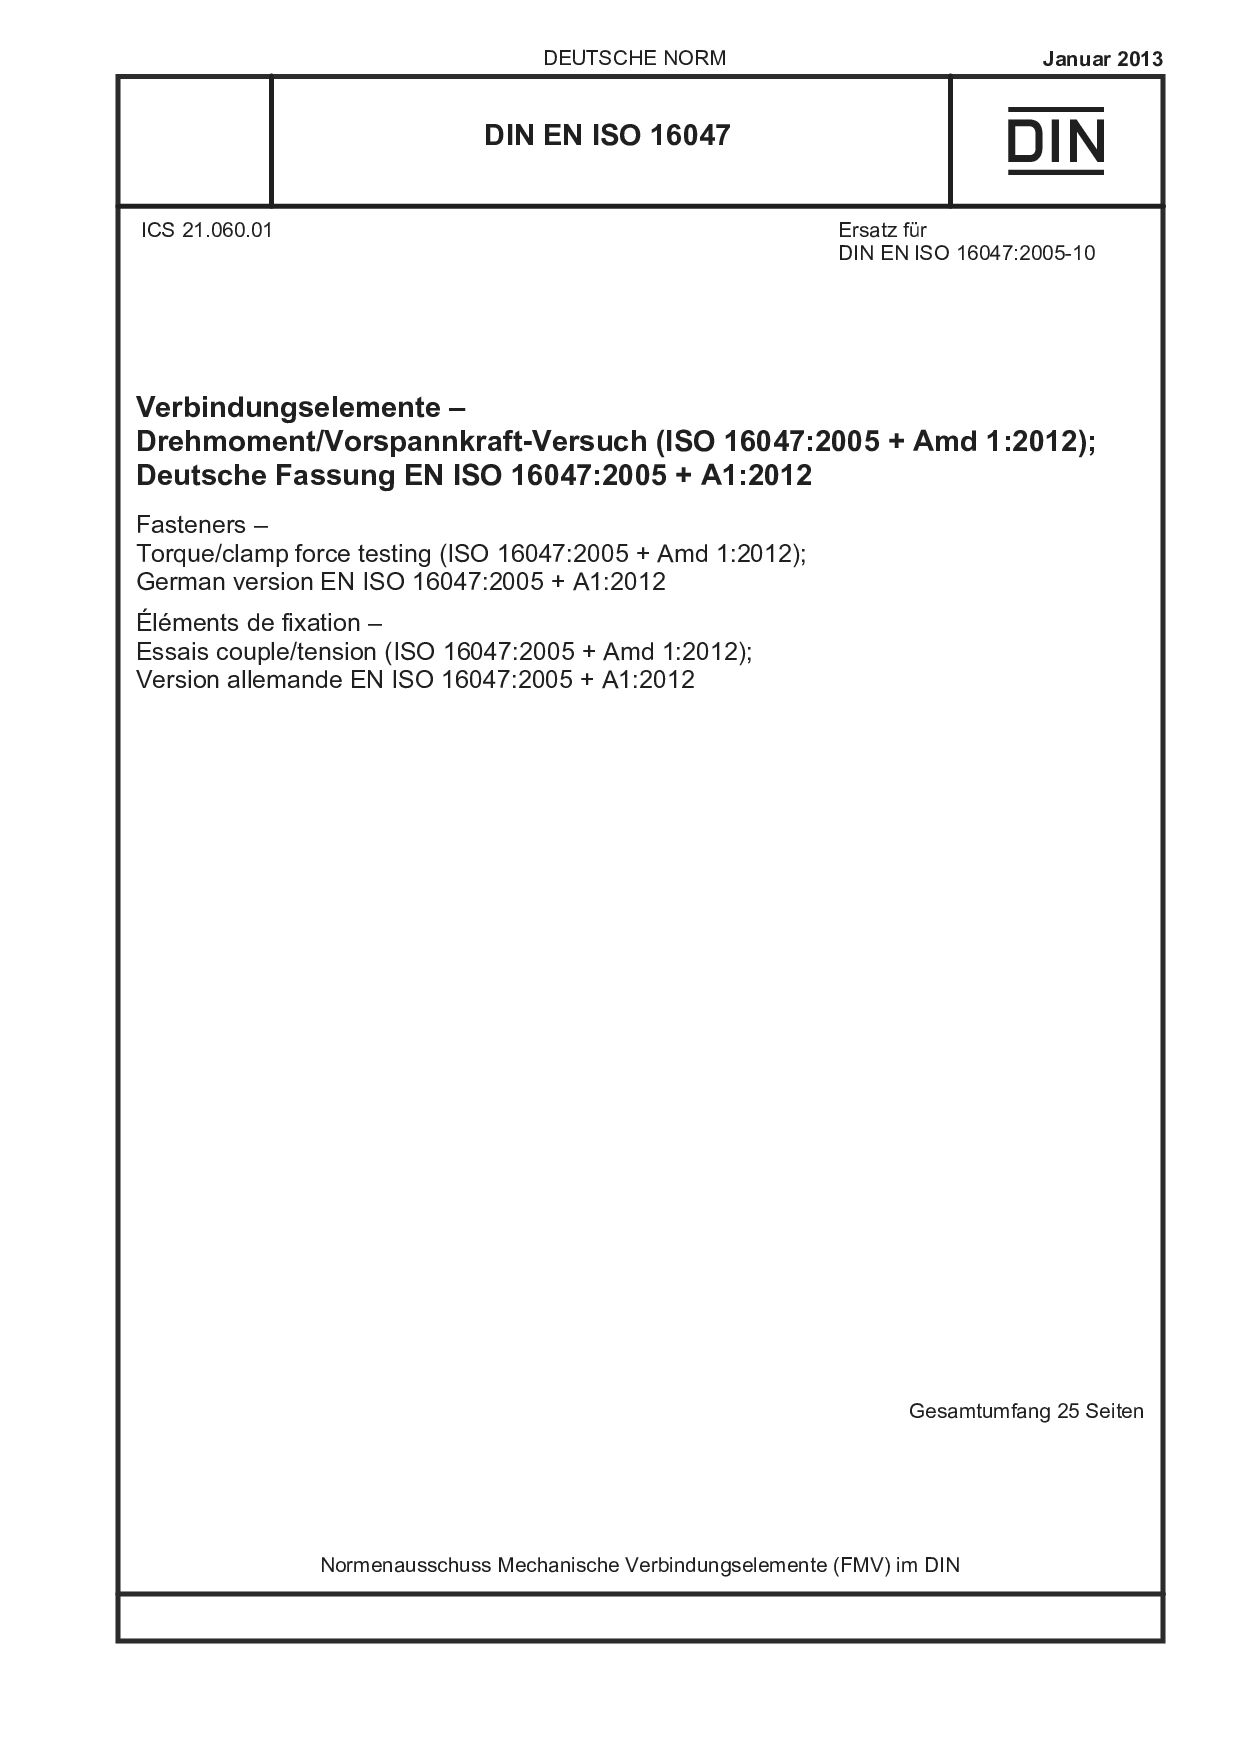 DIN EN ISO 16047:2013